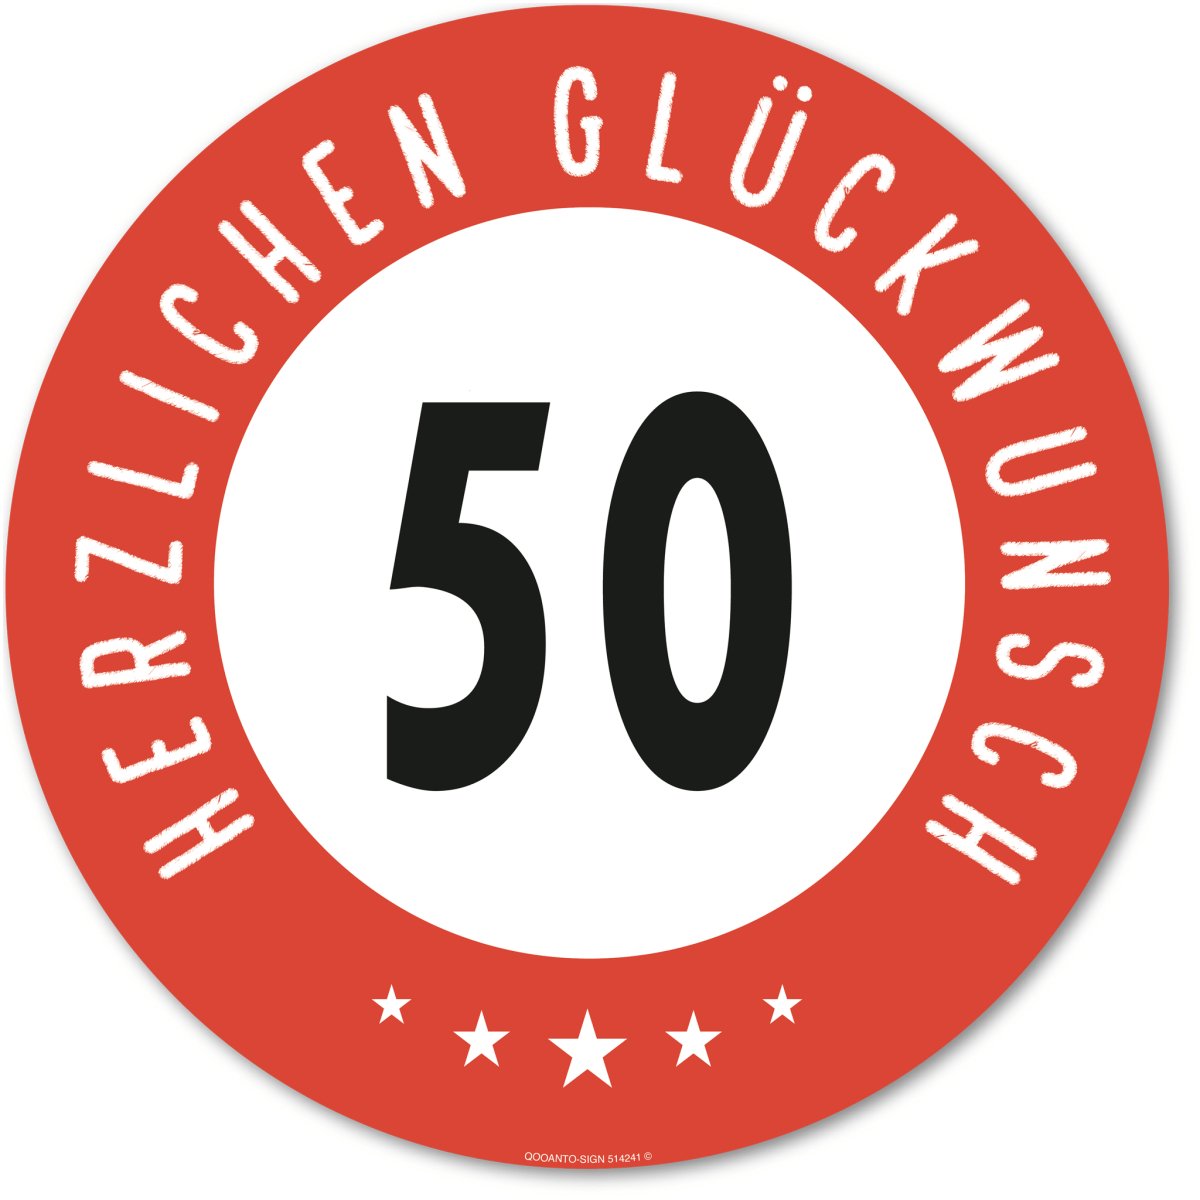 50 Geburtstagsschild oder Aufkleber mit Text "Herzlichen Glüchwunsch" aus Alu-Verbund oder Selbstklebefolie mit UV-Schutz - QOOANTO-SIGN